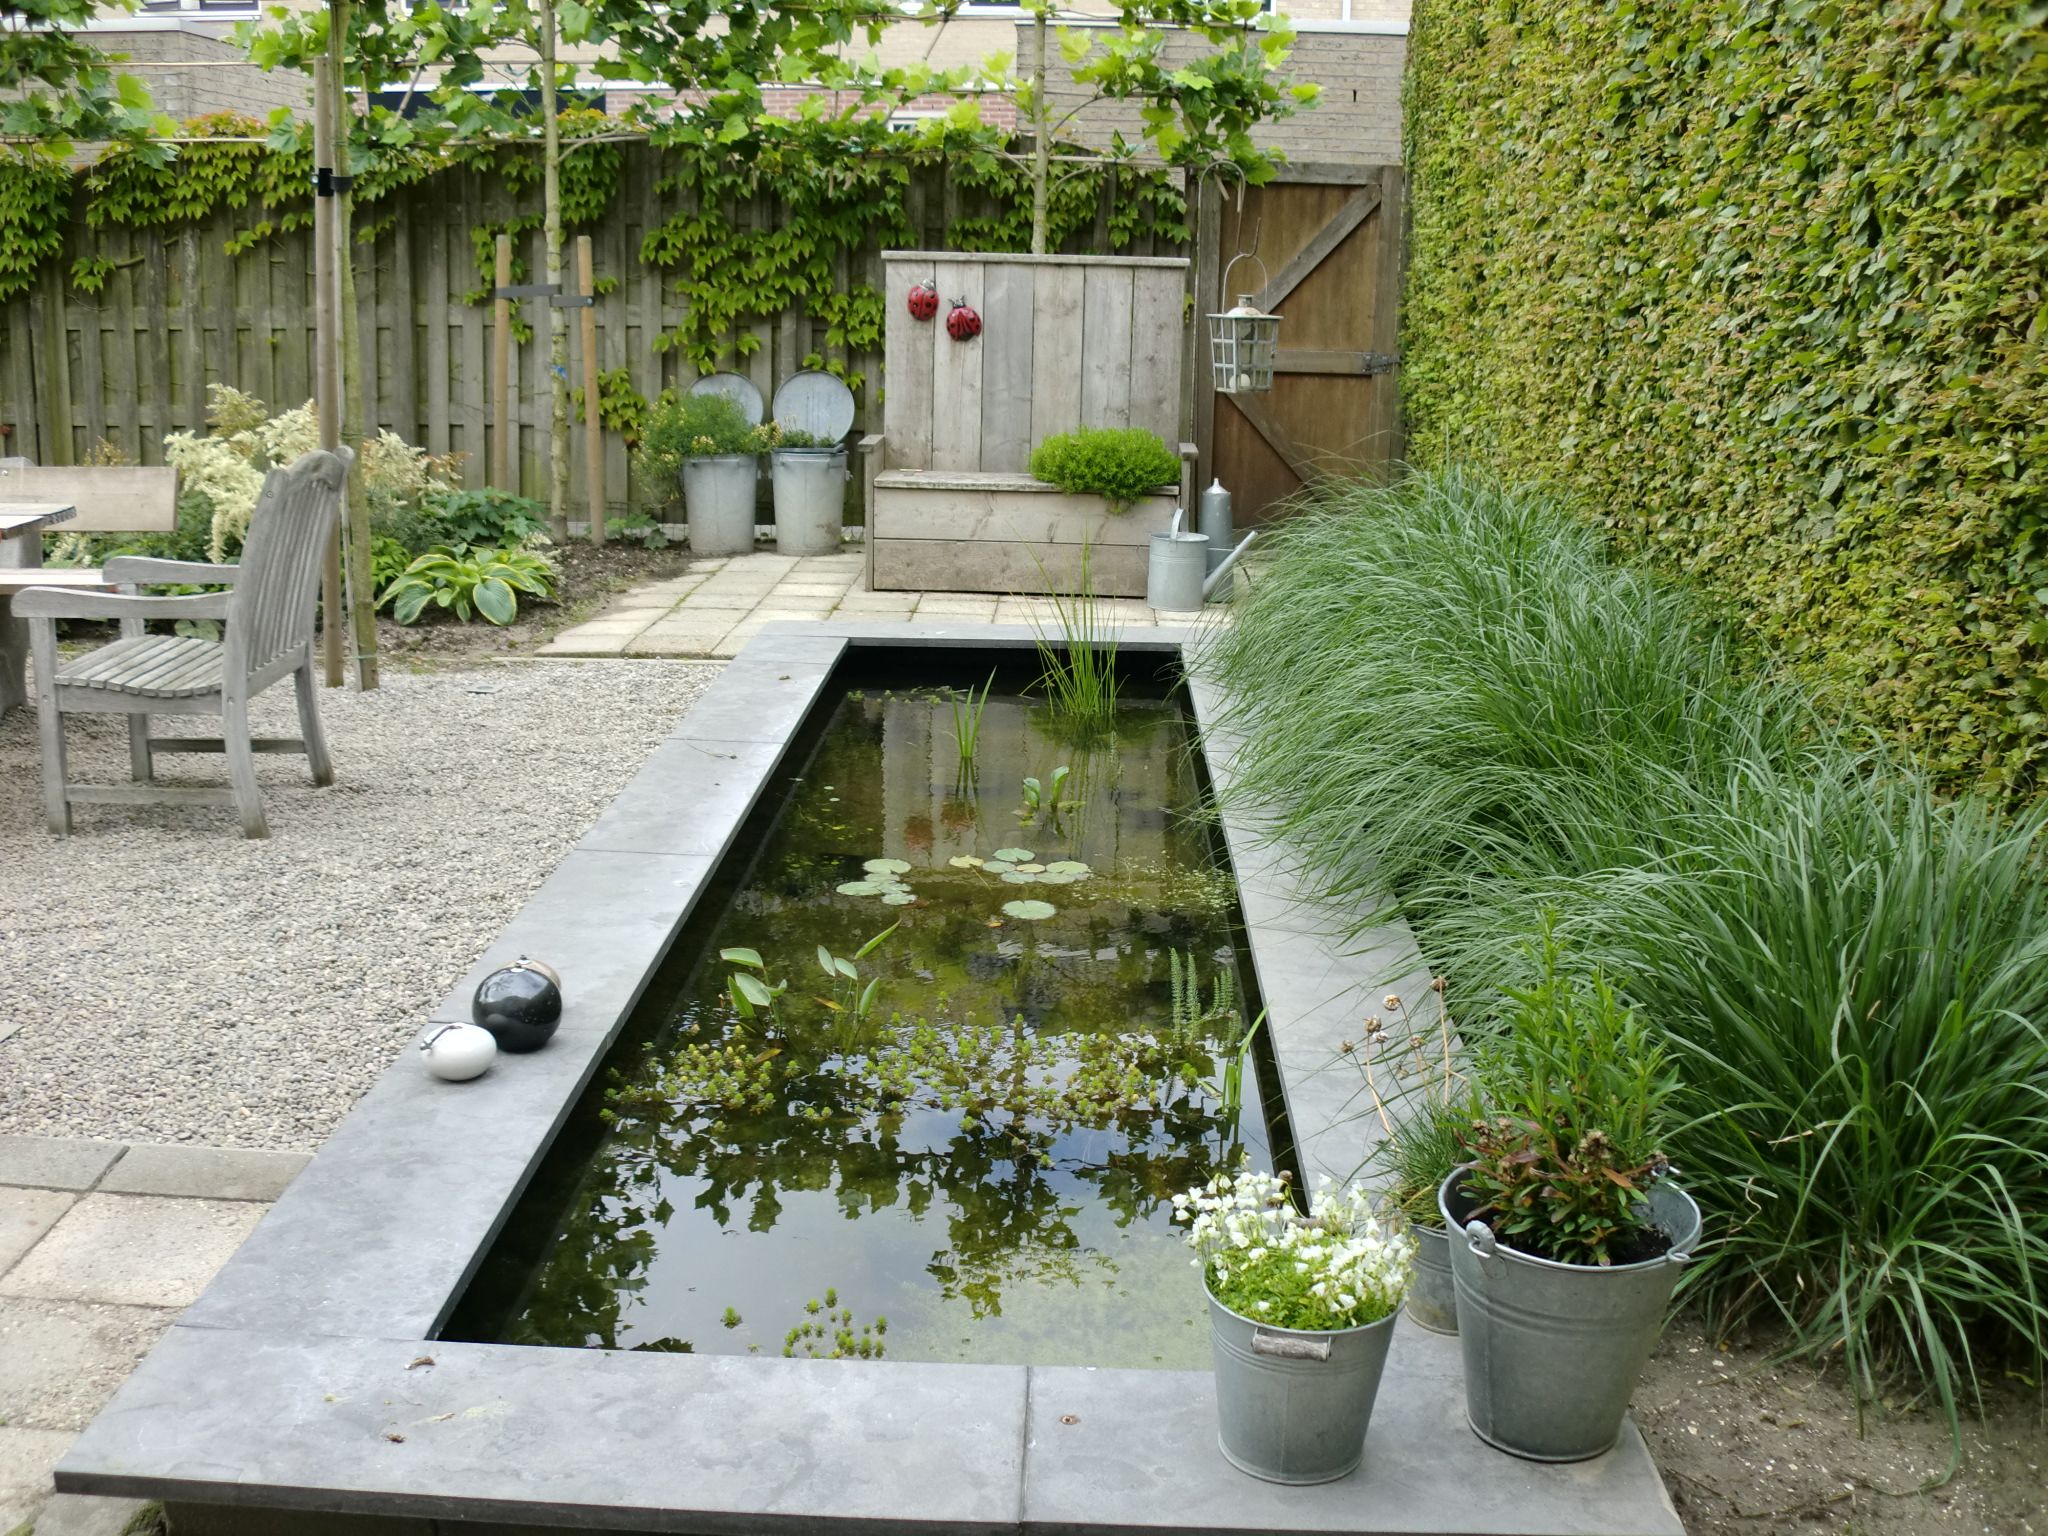 Decorative pond